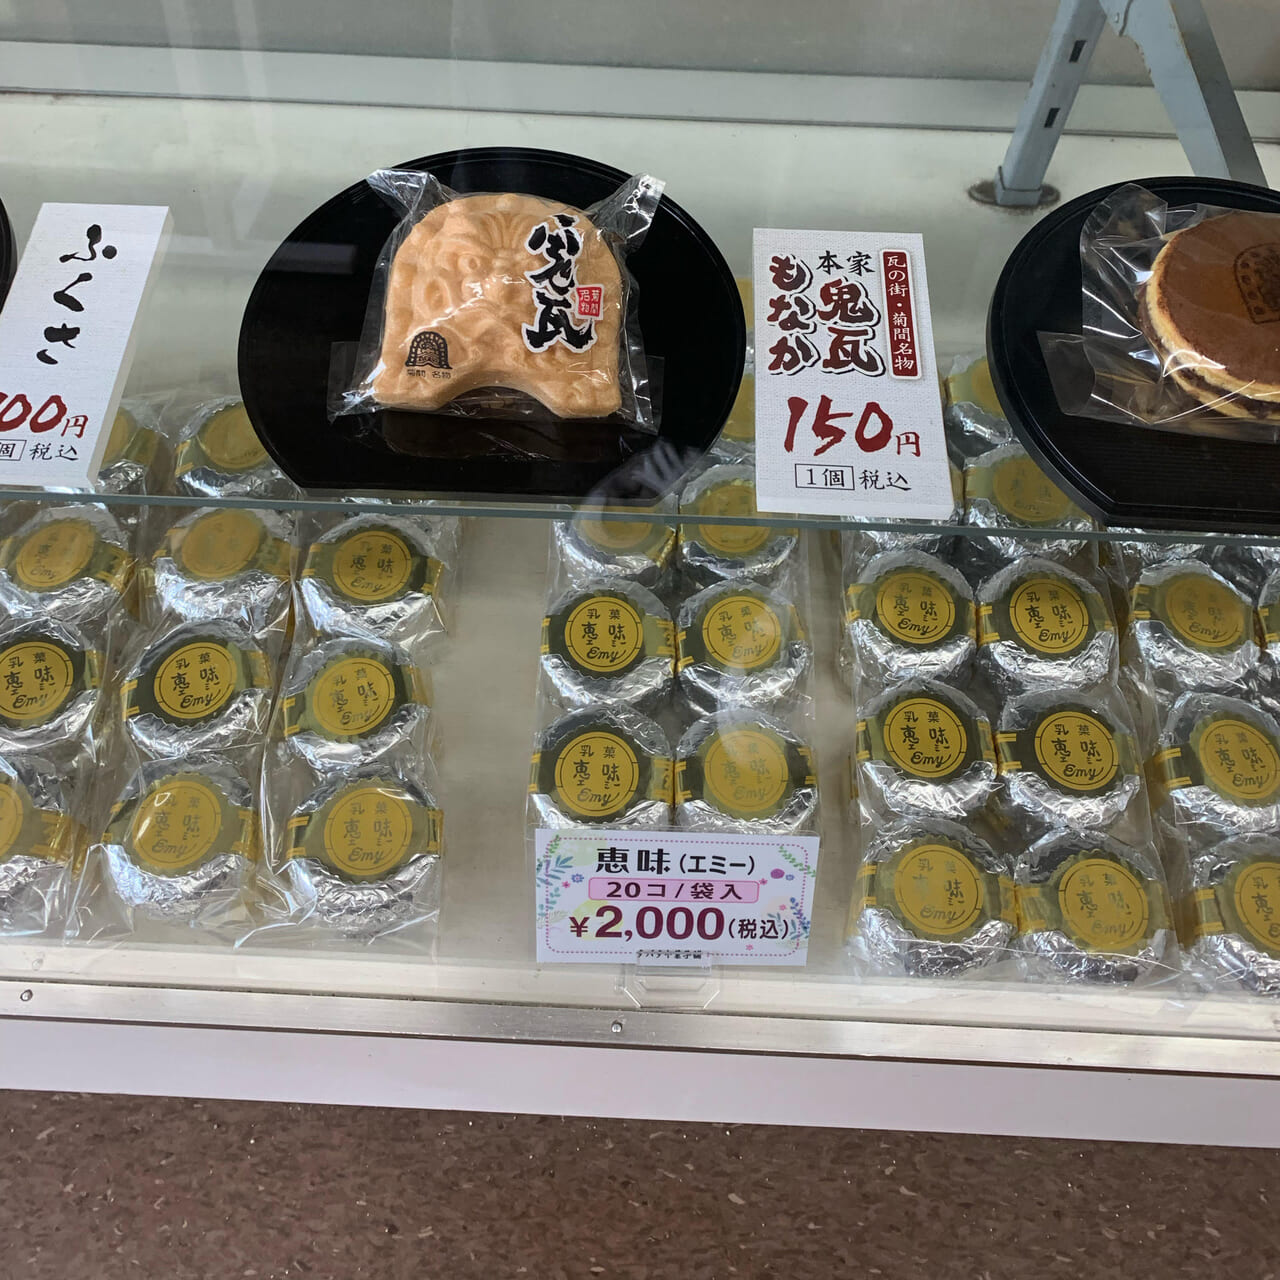 菊間町で90年以上の歴史を誇る和菓子と洋菓子のお店「タバタヤ菓子舗」